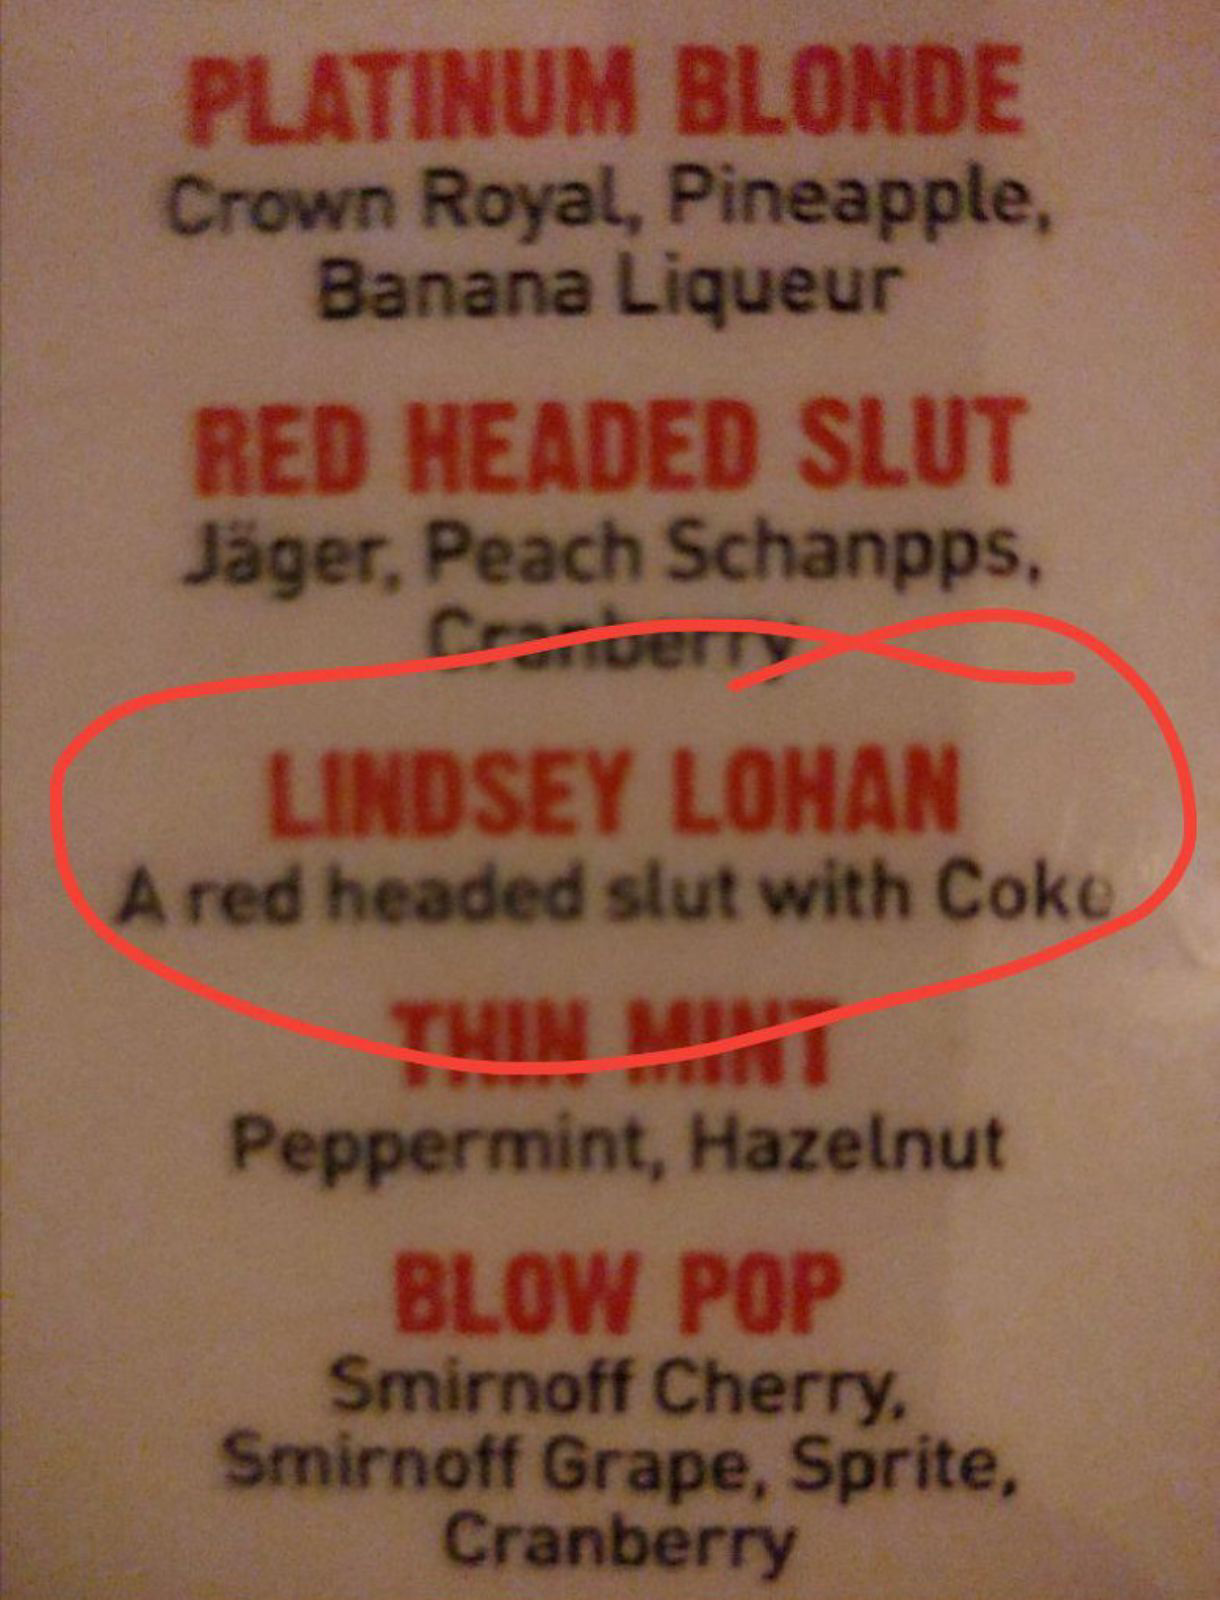 The Lindsey Lohan